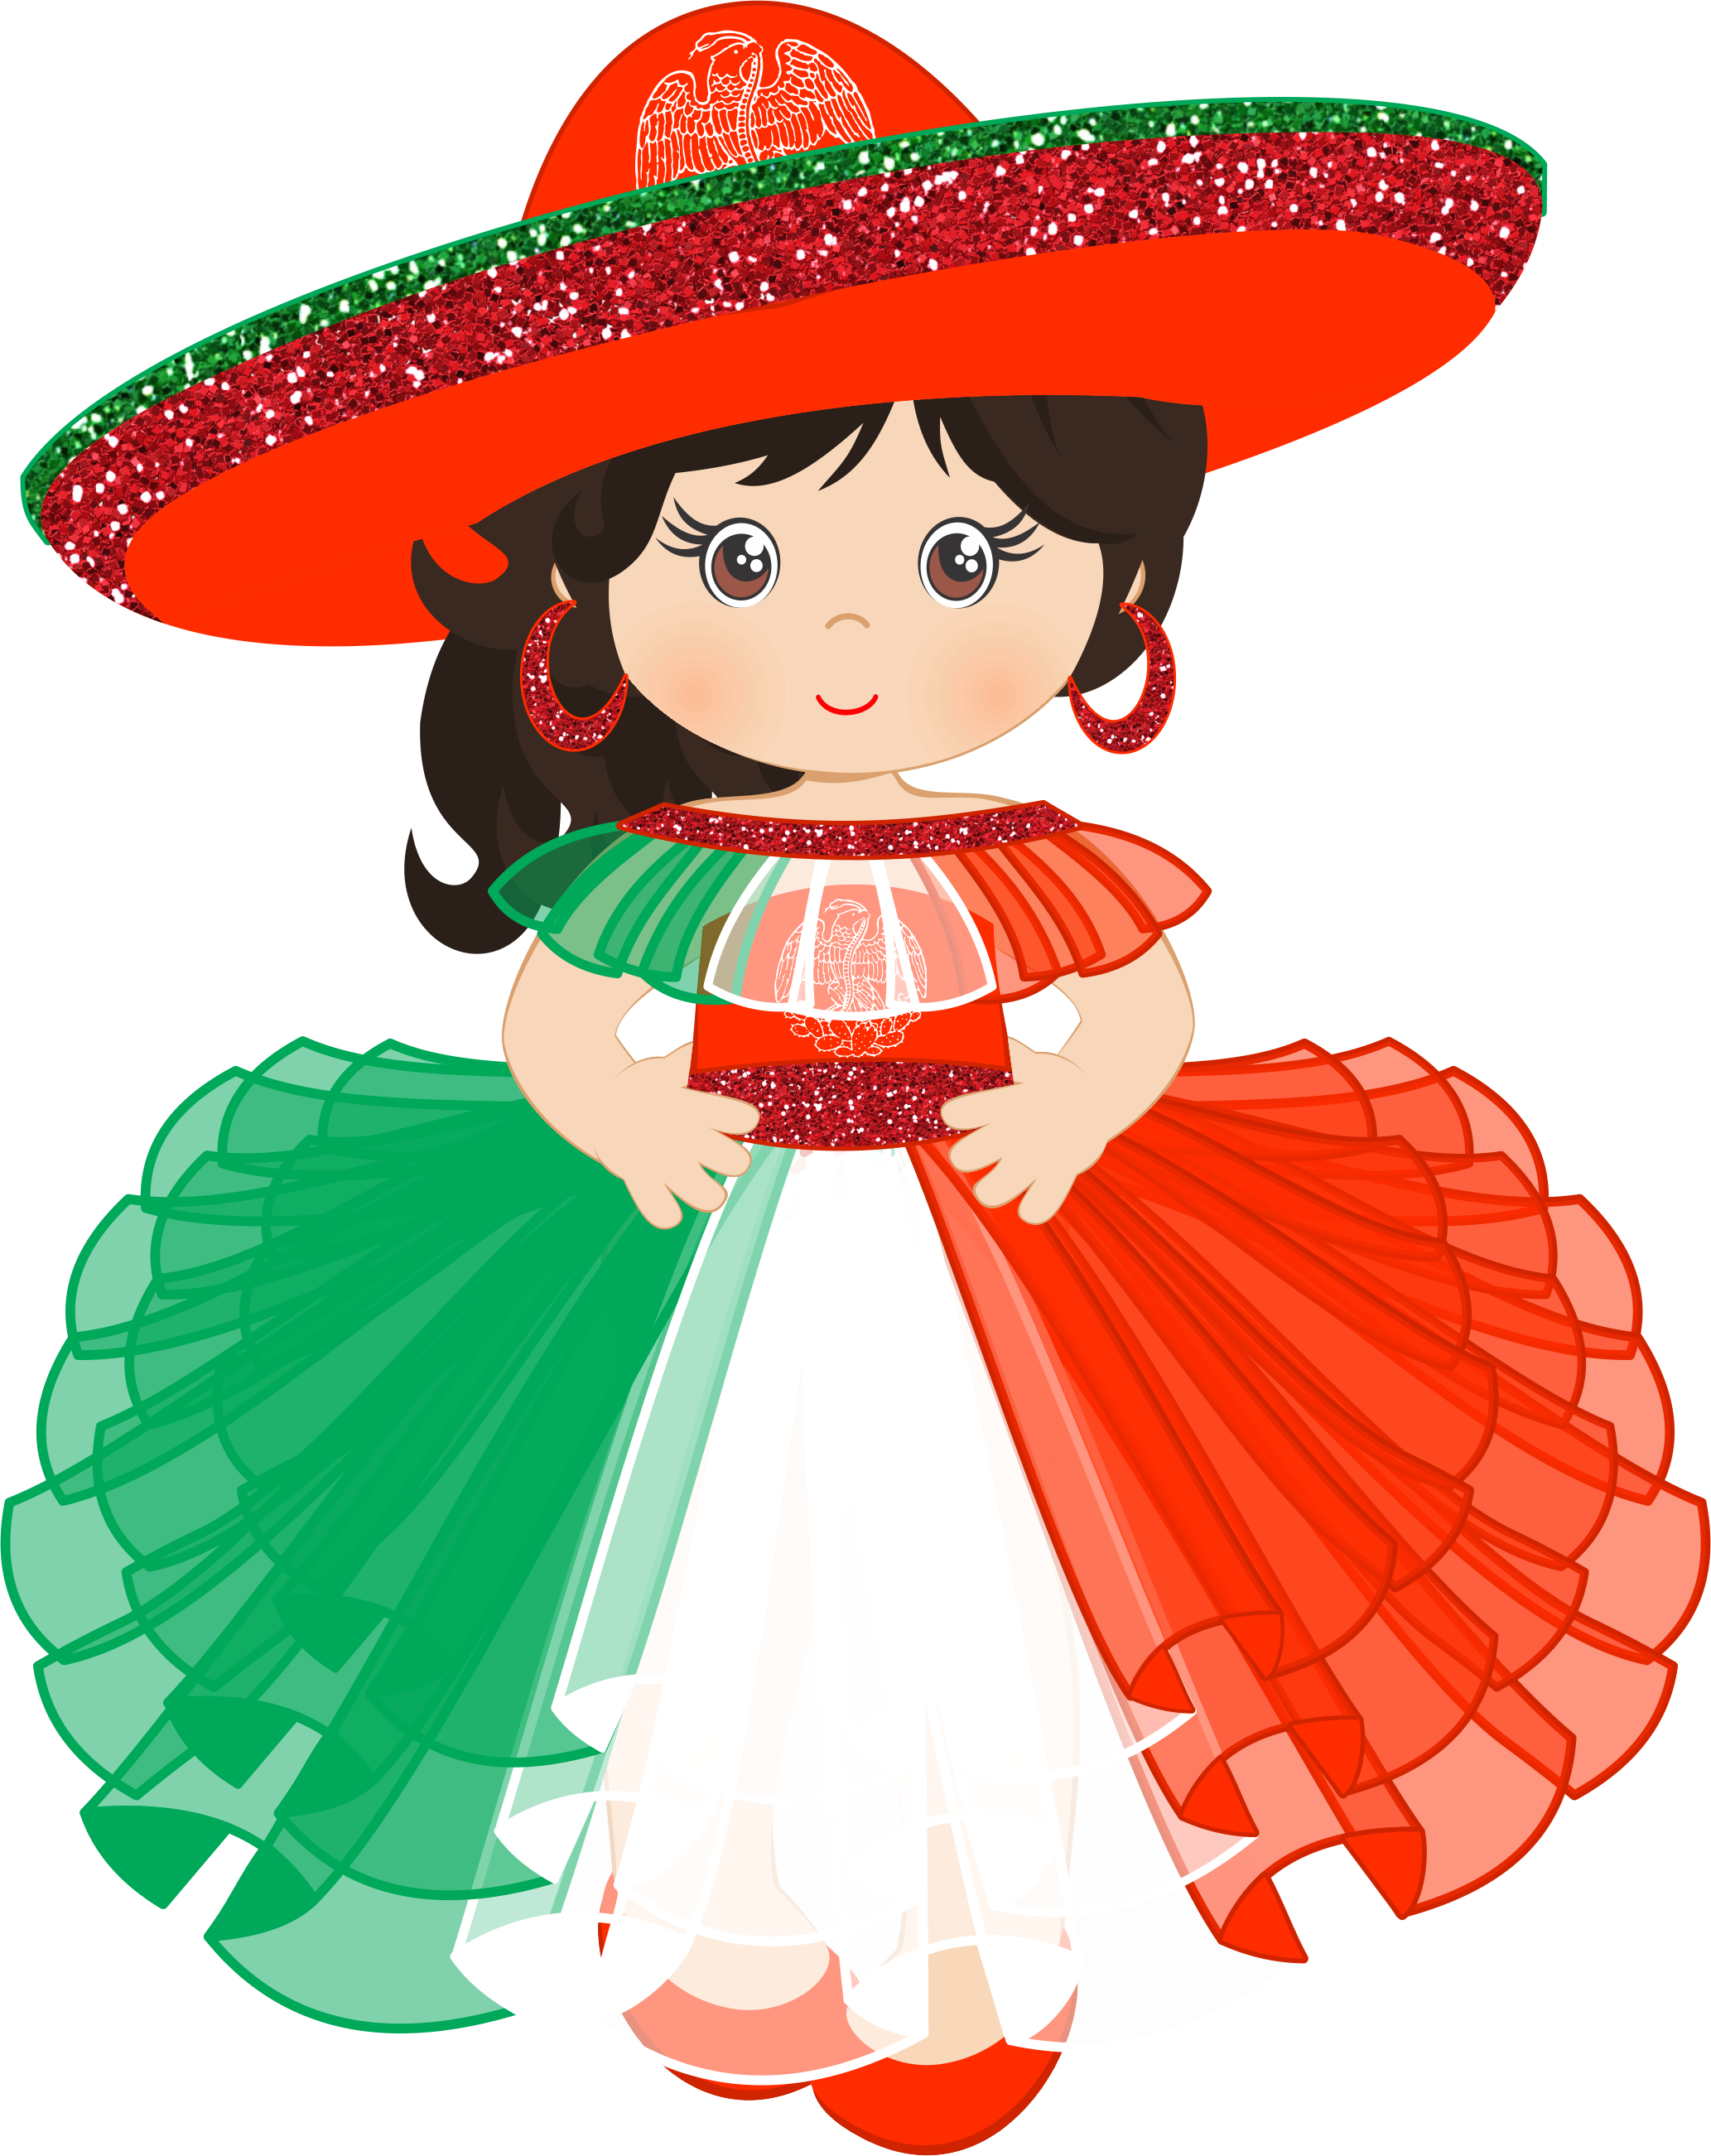 muñecamexico muñeca mexicanhighlighter sticker by @anghy_32